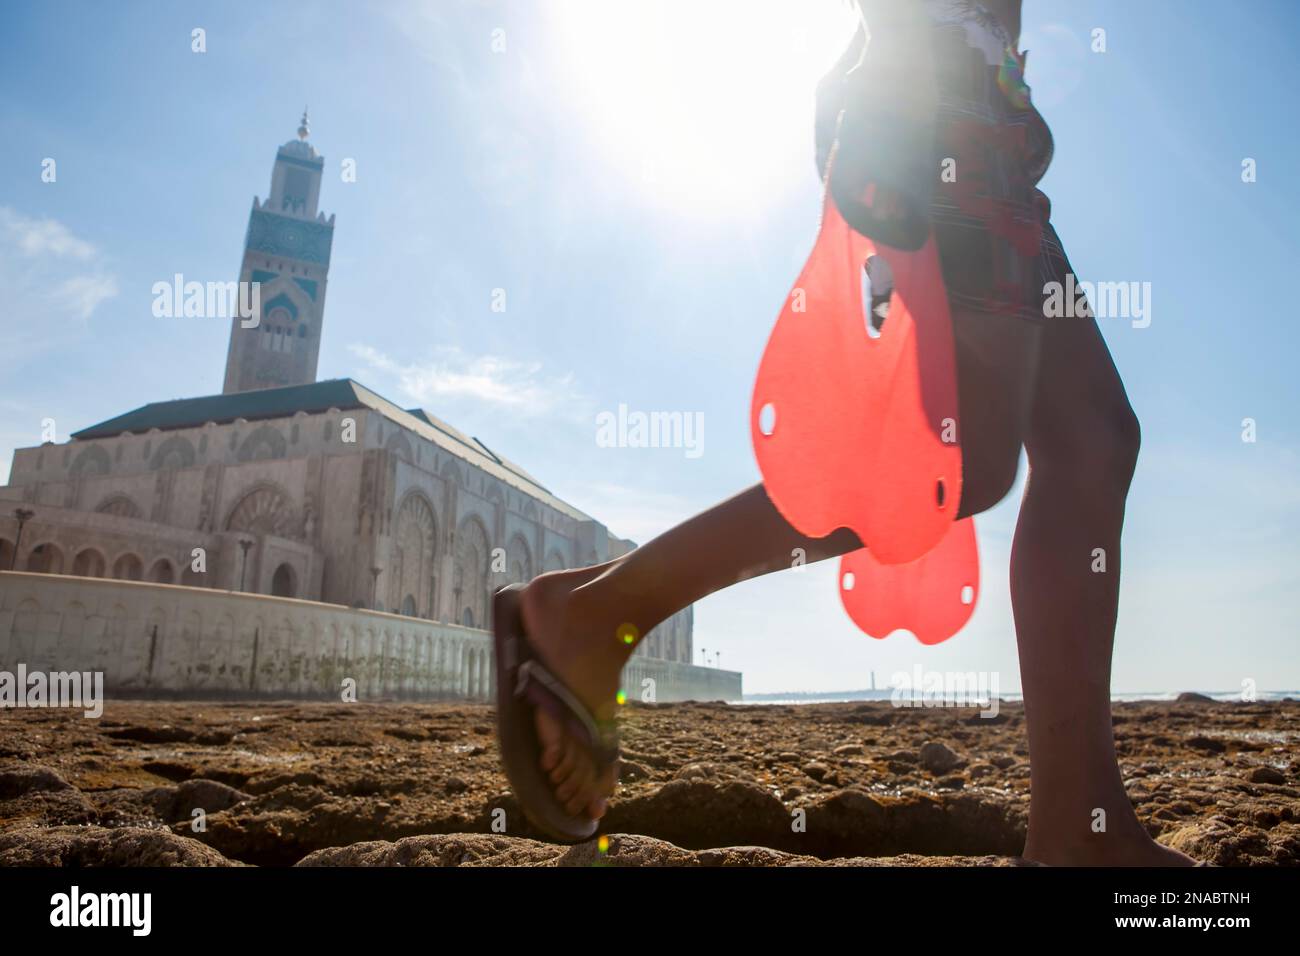 Vor der Hassan II Moschee von Casablanca trägt ein kleiner Junge Flossen zum Schwimmen und Tauchen in Marokko; Casablanca, Marokko Stockfoto